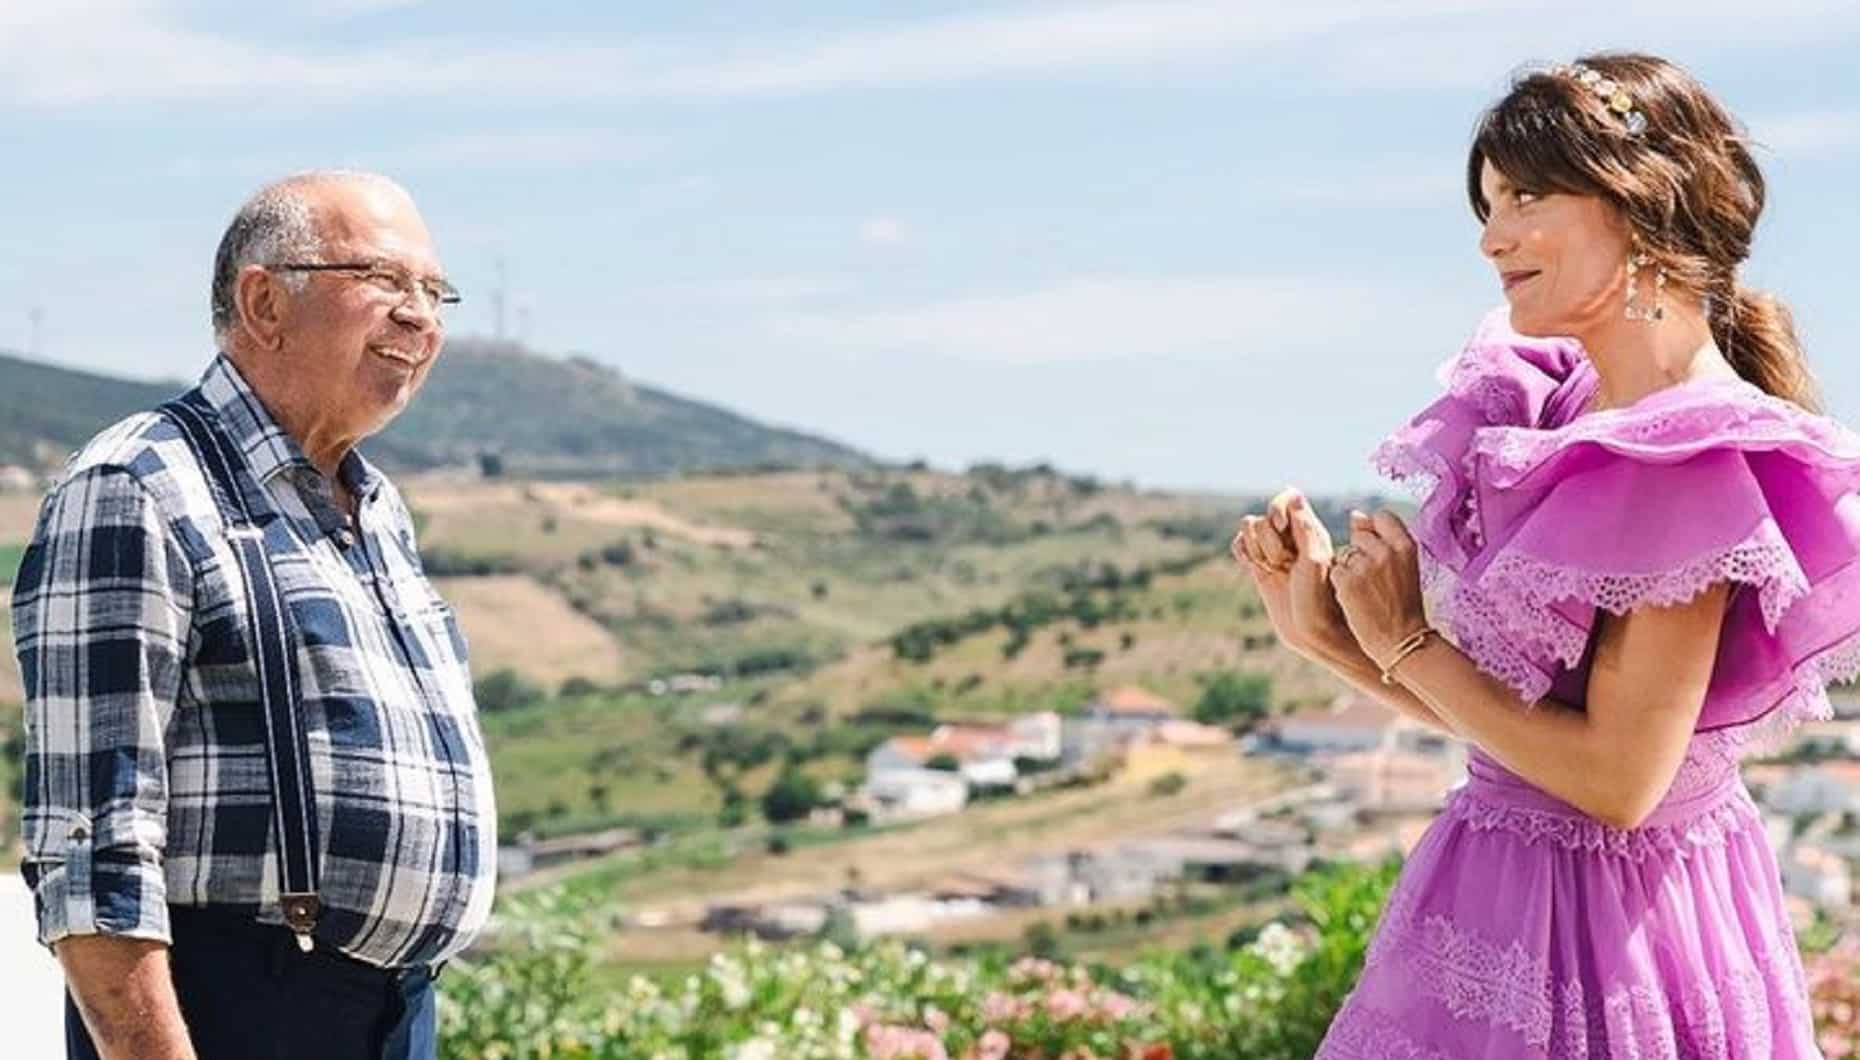 Quem Quer Namorar Com o Agricultor, José Coutinho, Andreia Rodrigues